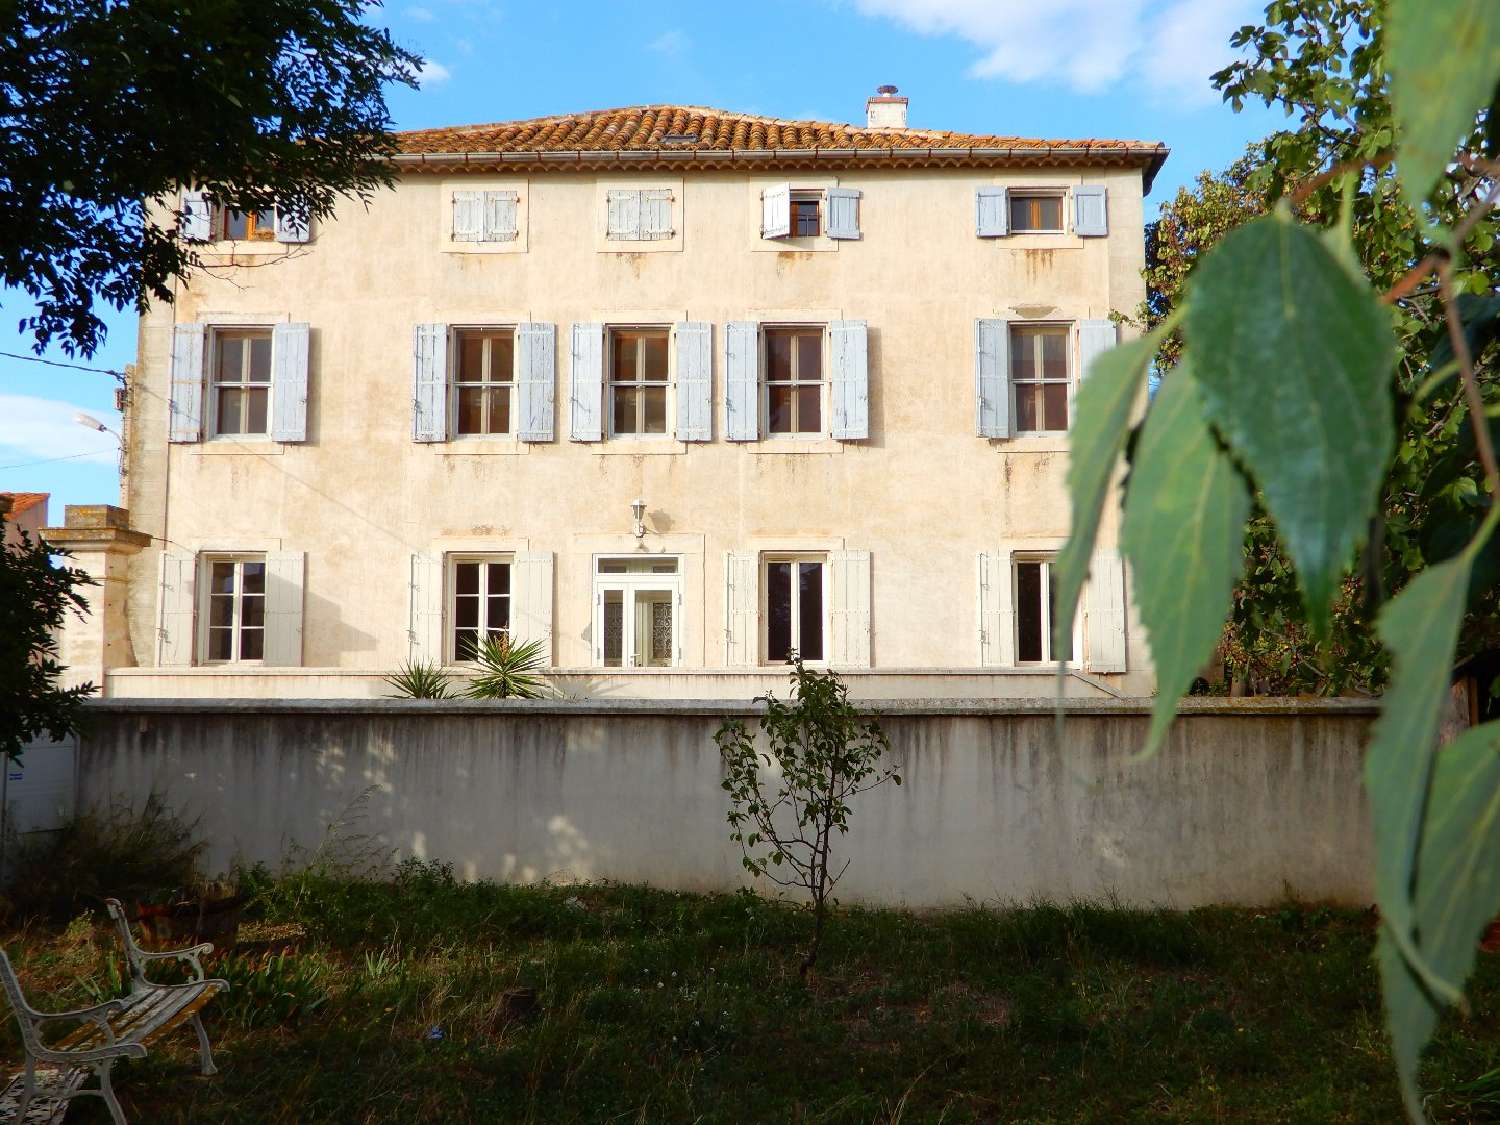  à vendre maison bourgeoise Narbonne Aude 2